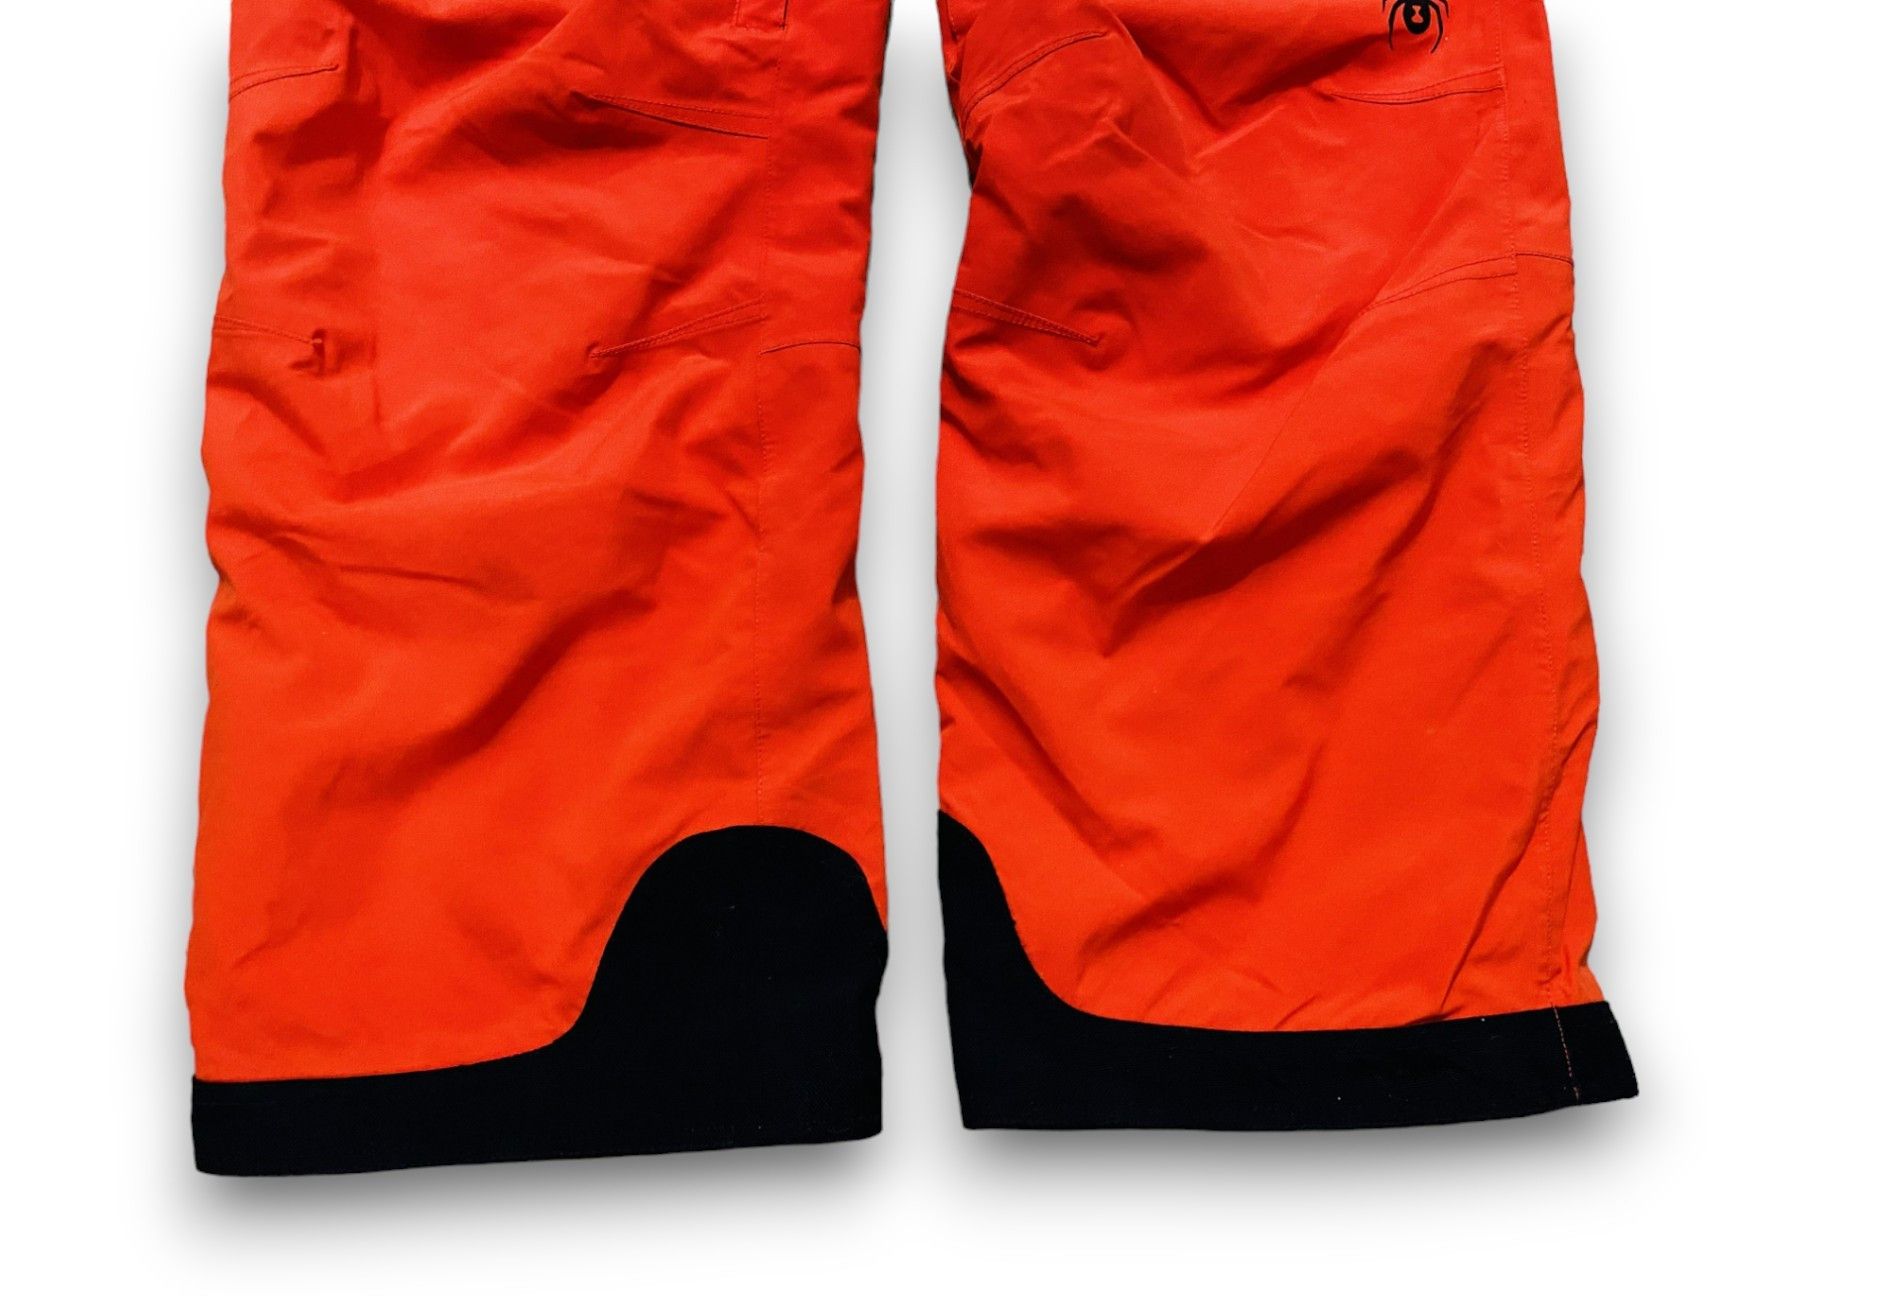 Outdoor Life - Spyder Pants Snowboarding Ski Outdoor Orange Men's M/L - 7